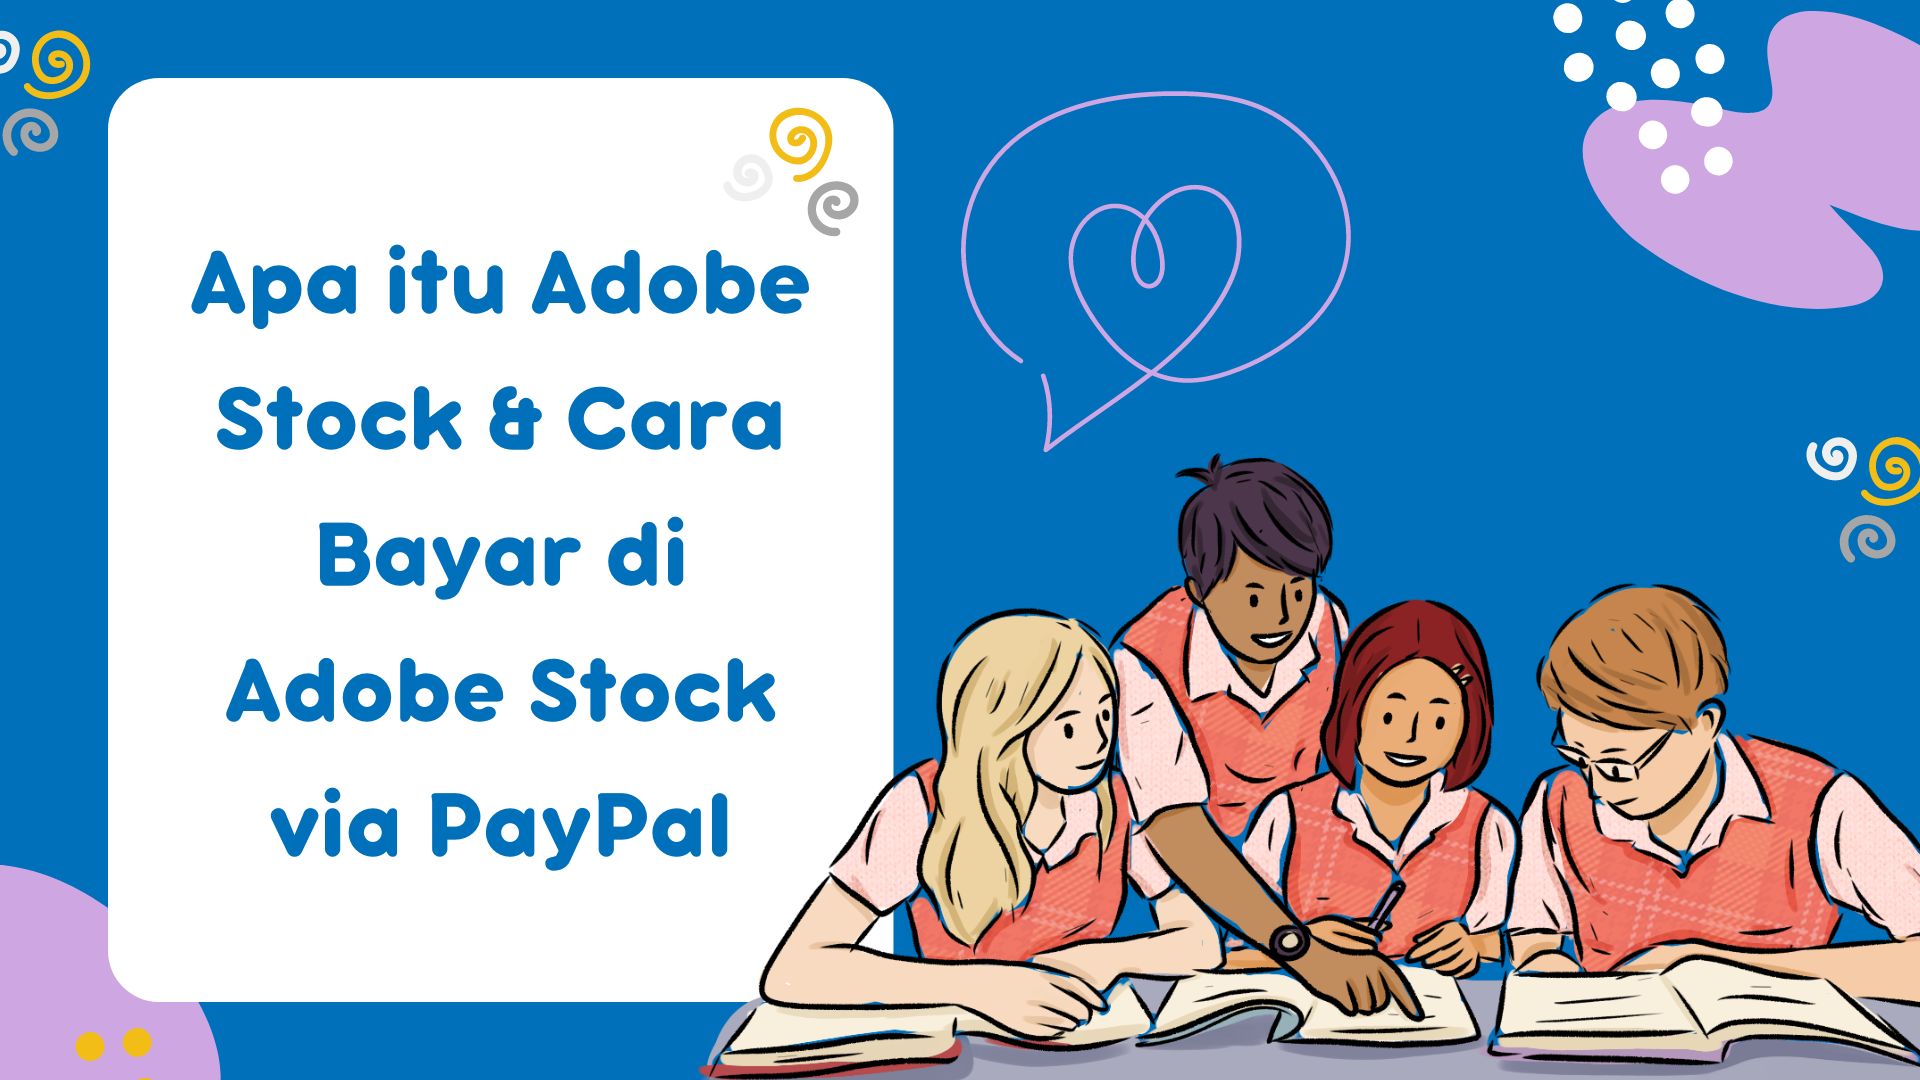 Apa itu Adobe Stock & Cara Bayar di Adobe Stock via PayPal